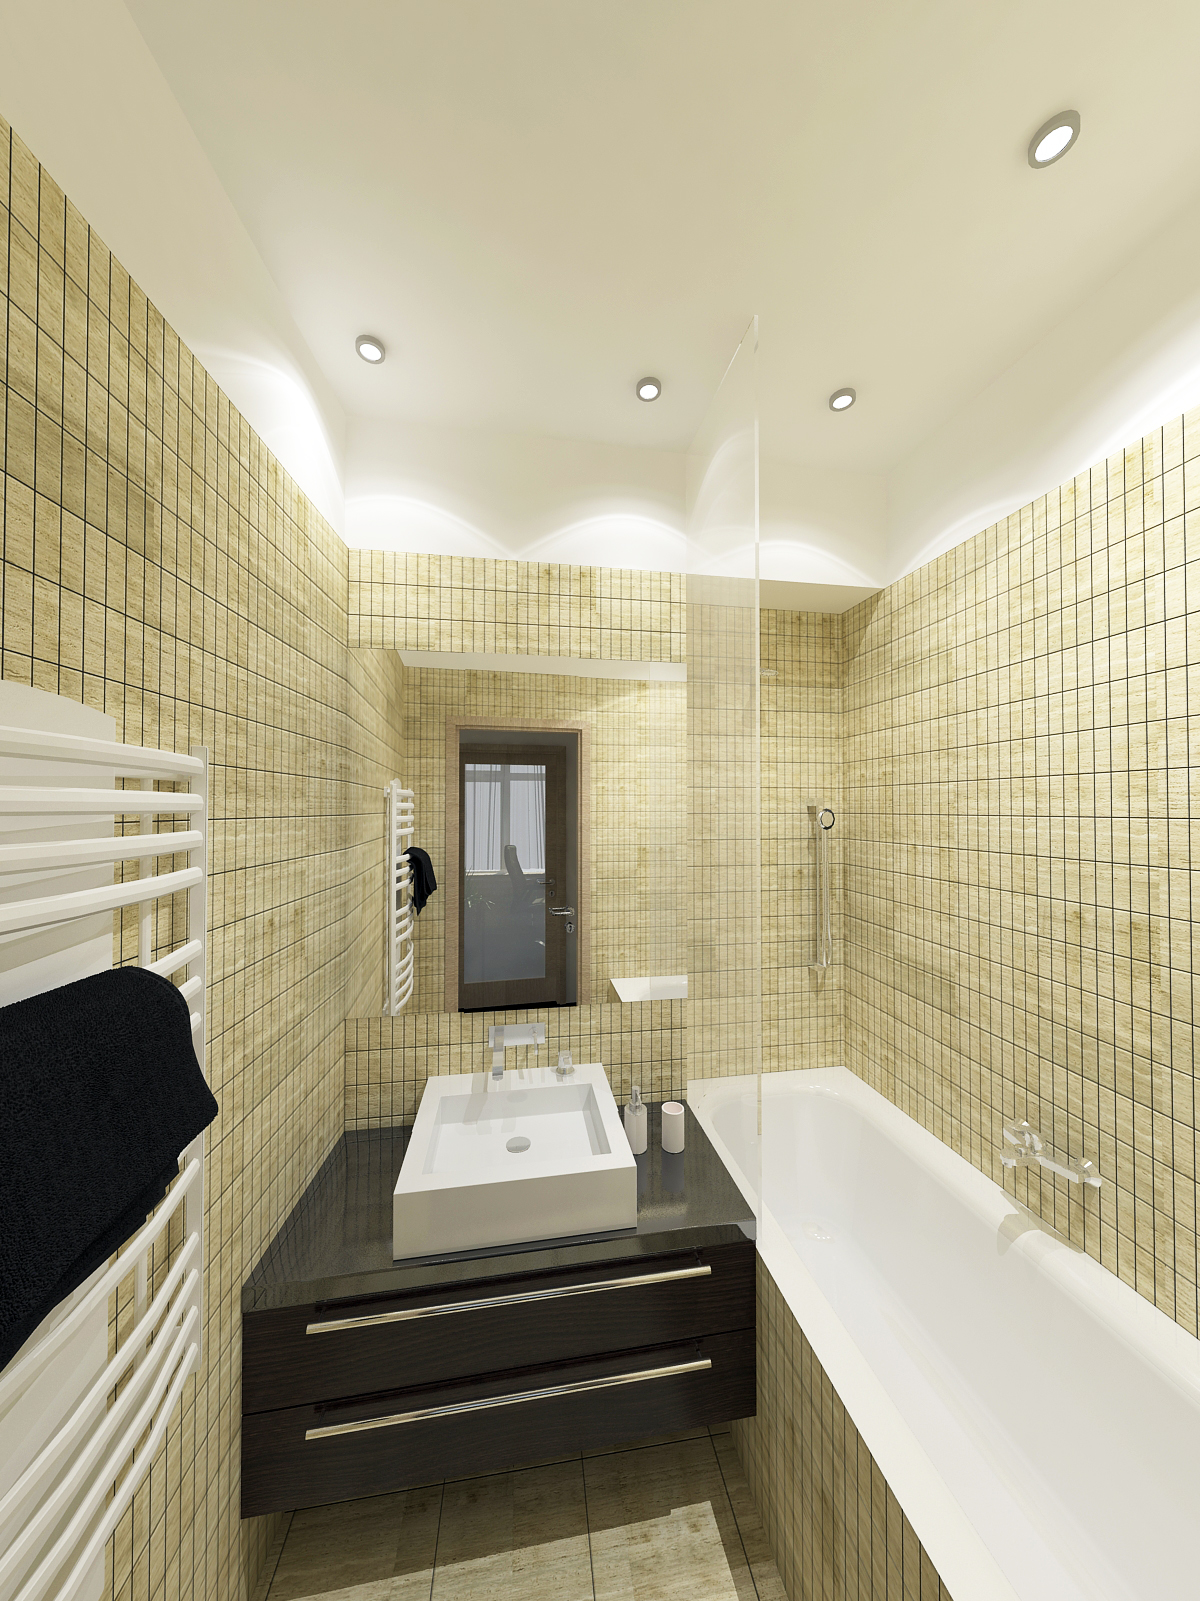 Fürdőszoba - látványterv / Bathroom - architectural visualization